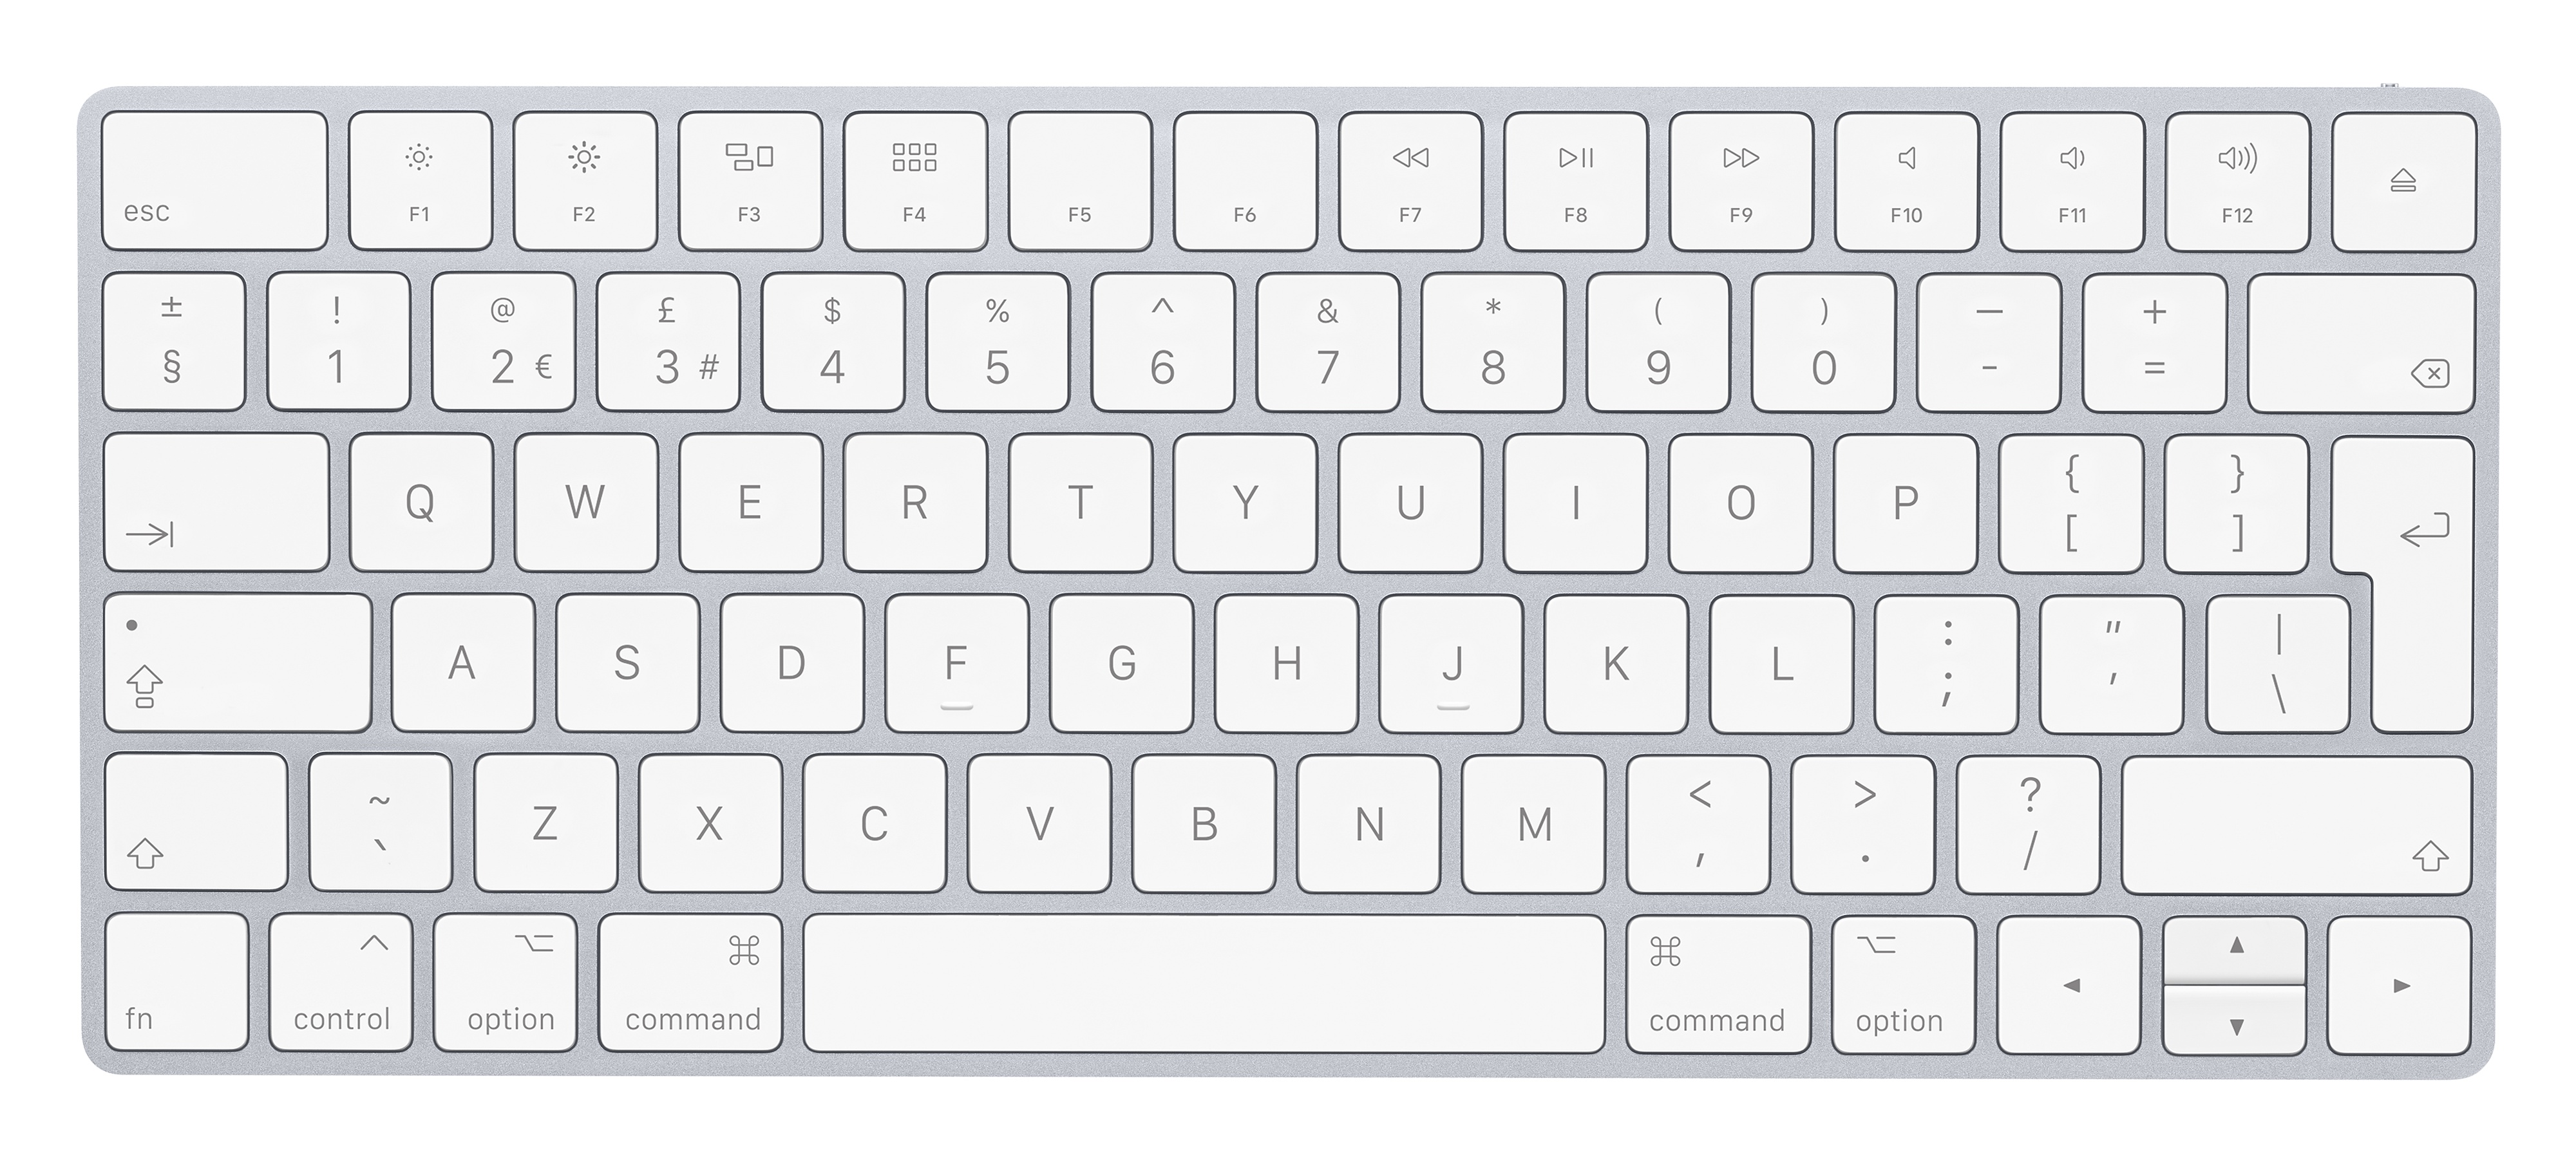 mac magic keyboard fn key